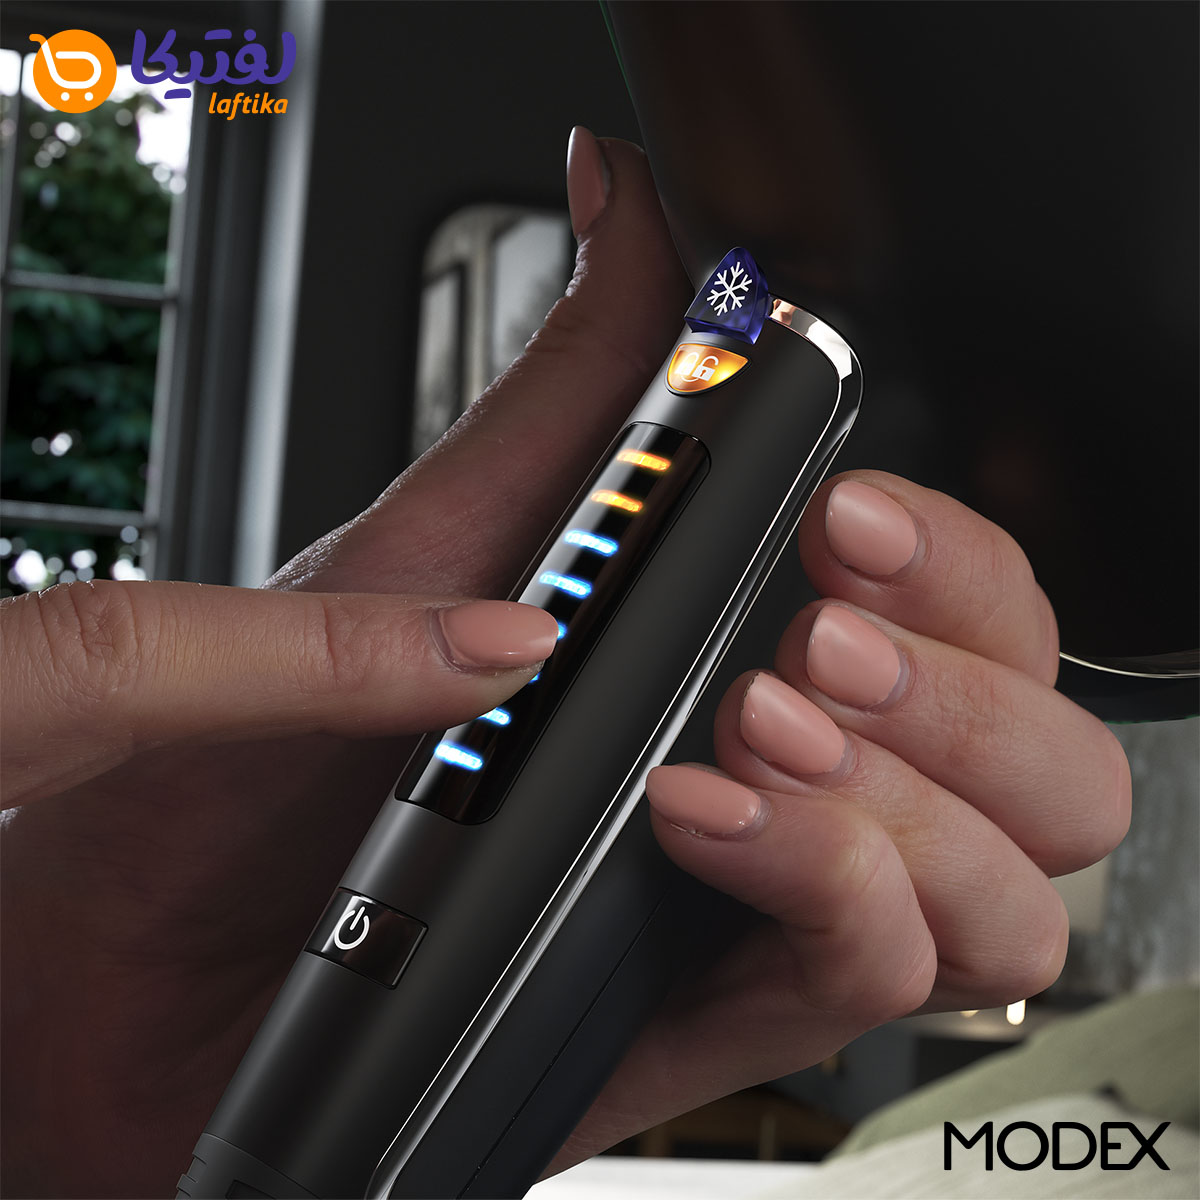 سشوار مودکس HD1280 2200W یون دار با دیفیوزر و کنترل لمسی هوشمند